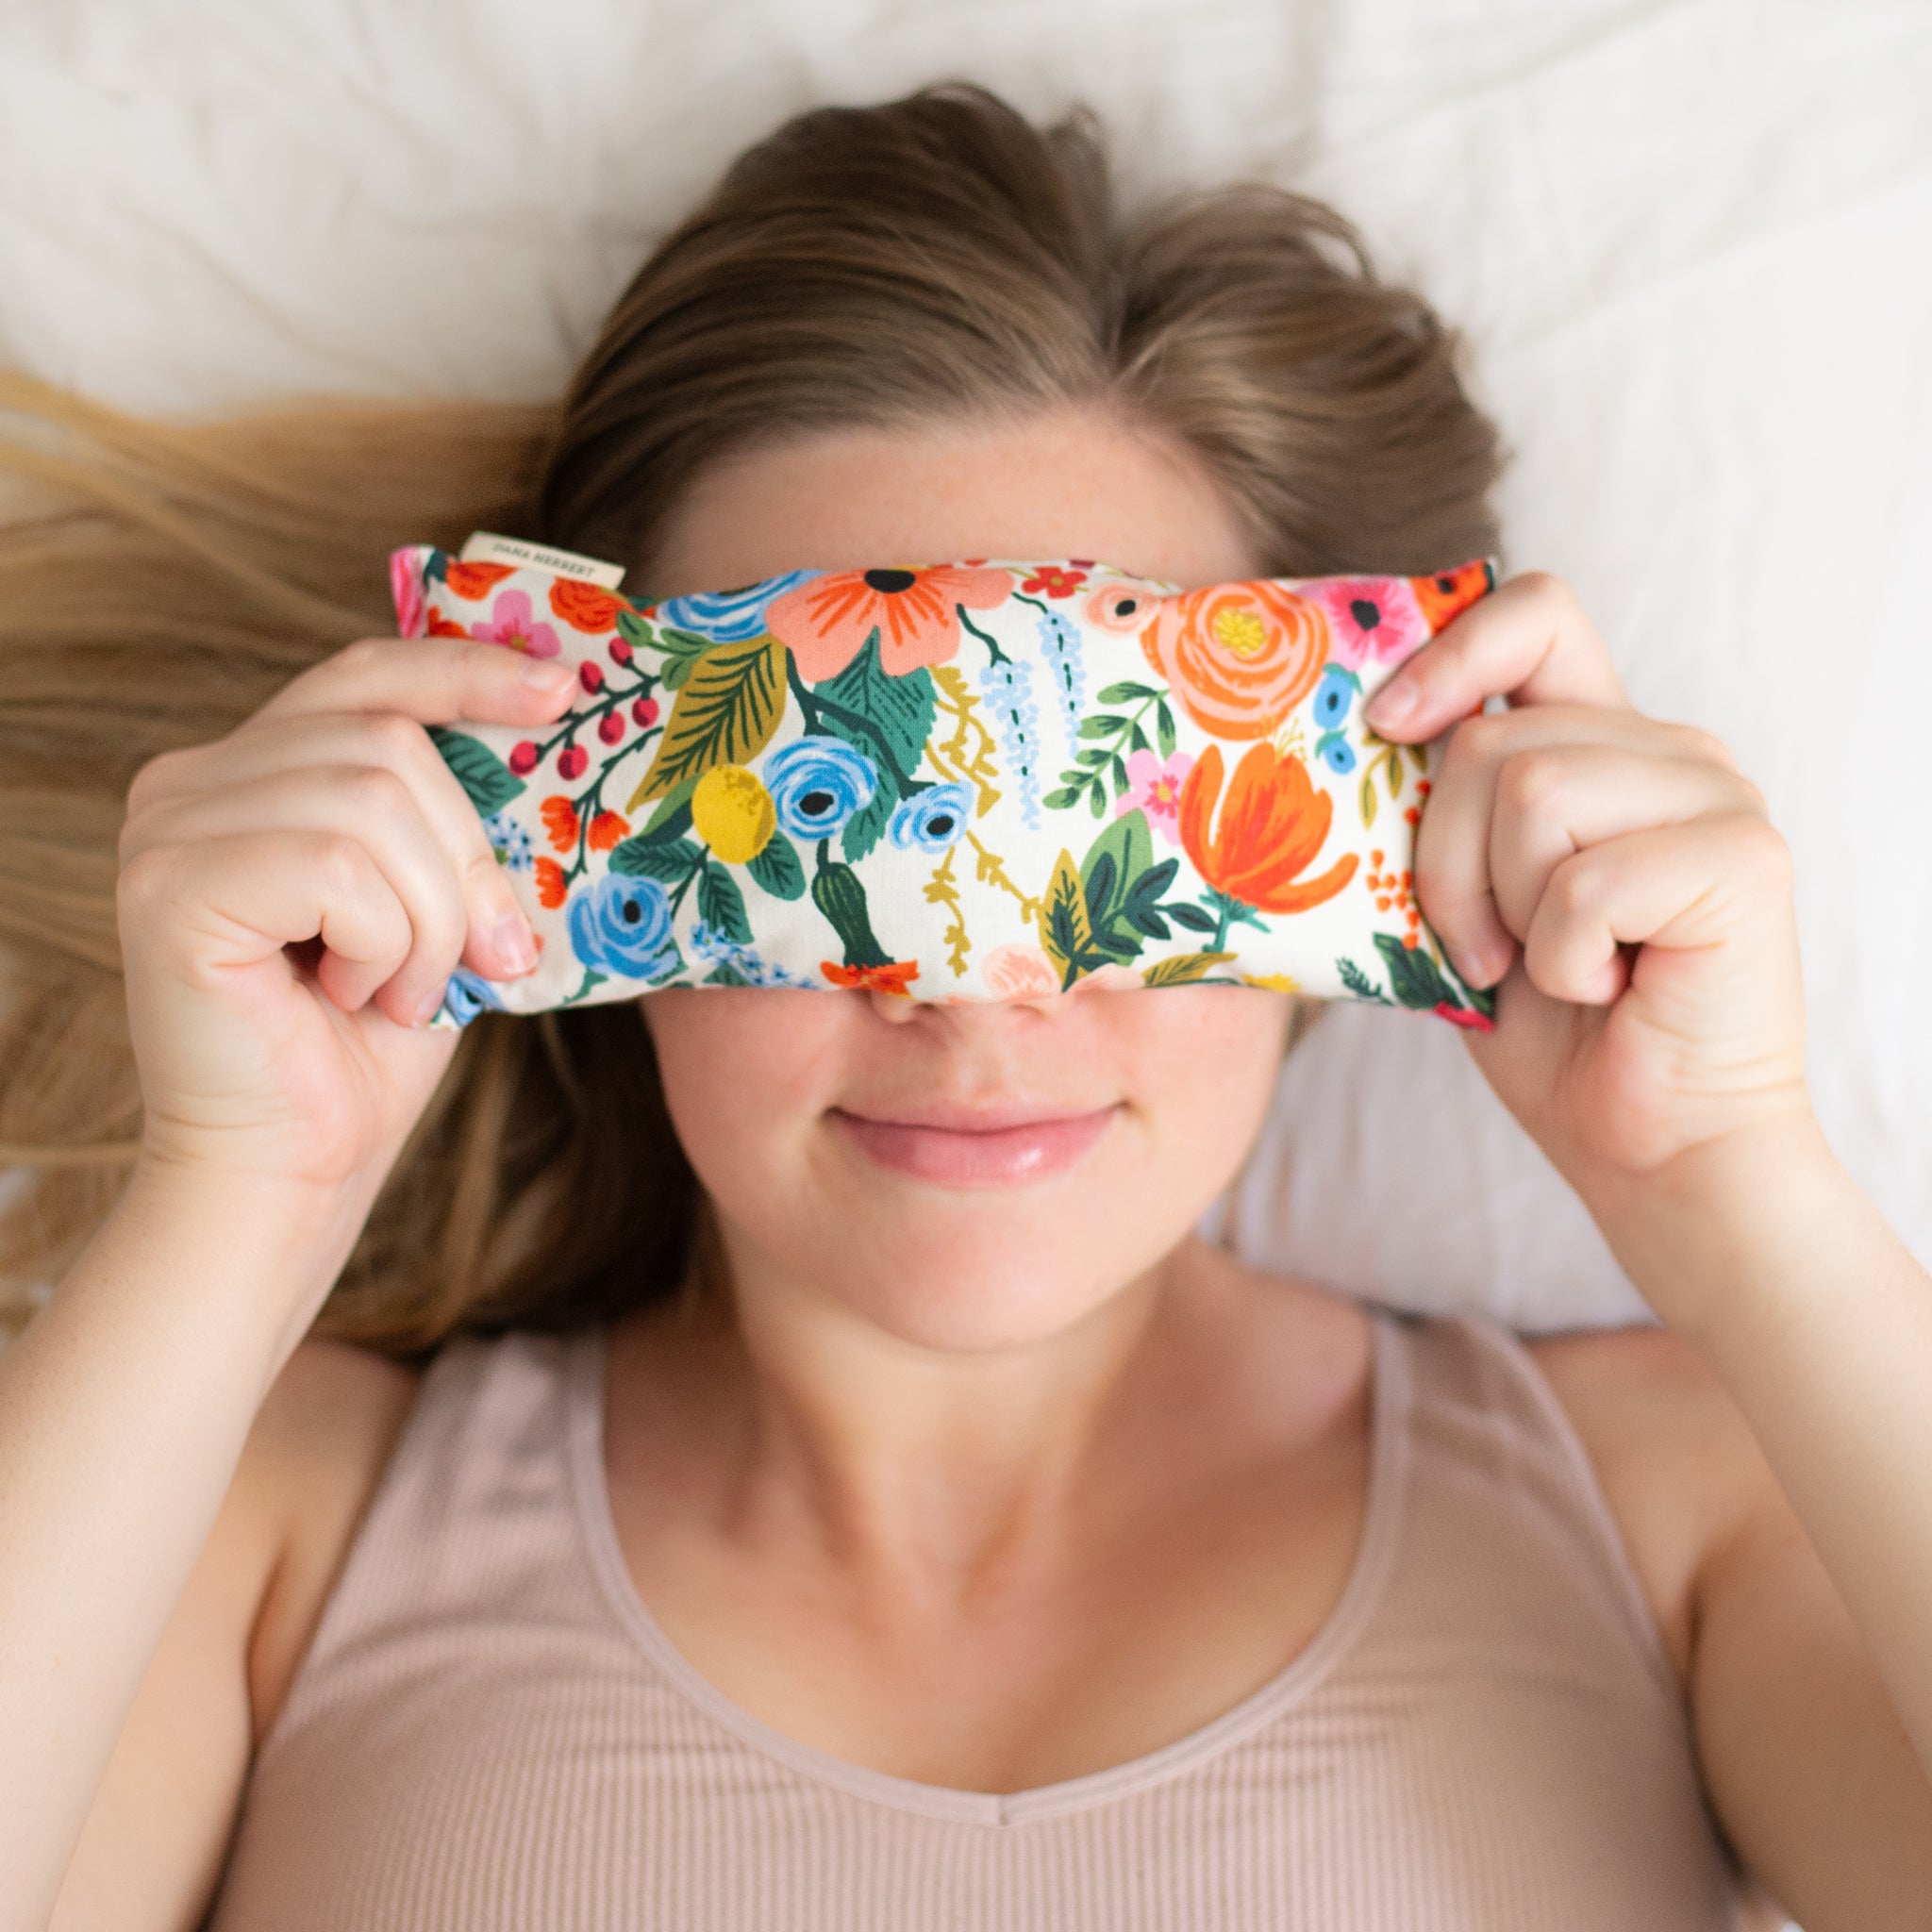 Lovely Lavender Eye Pillow Sleep Mask